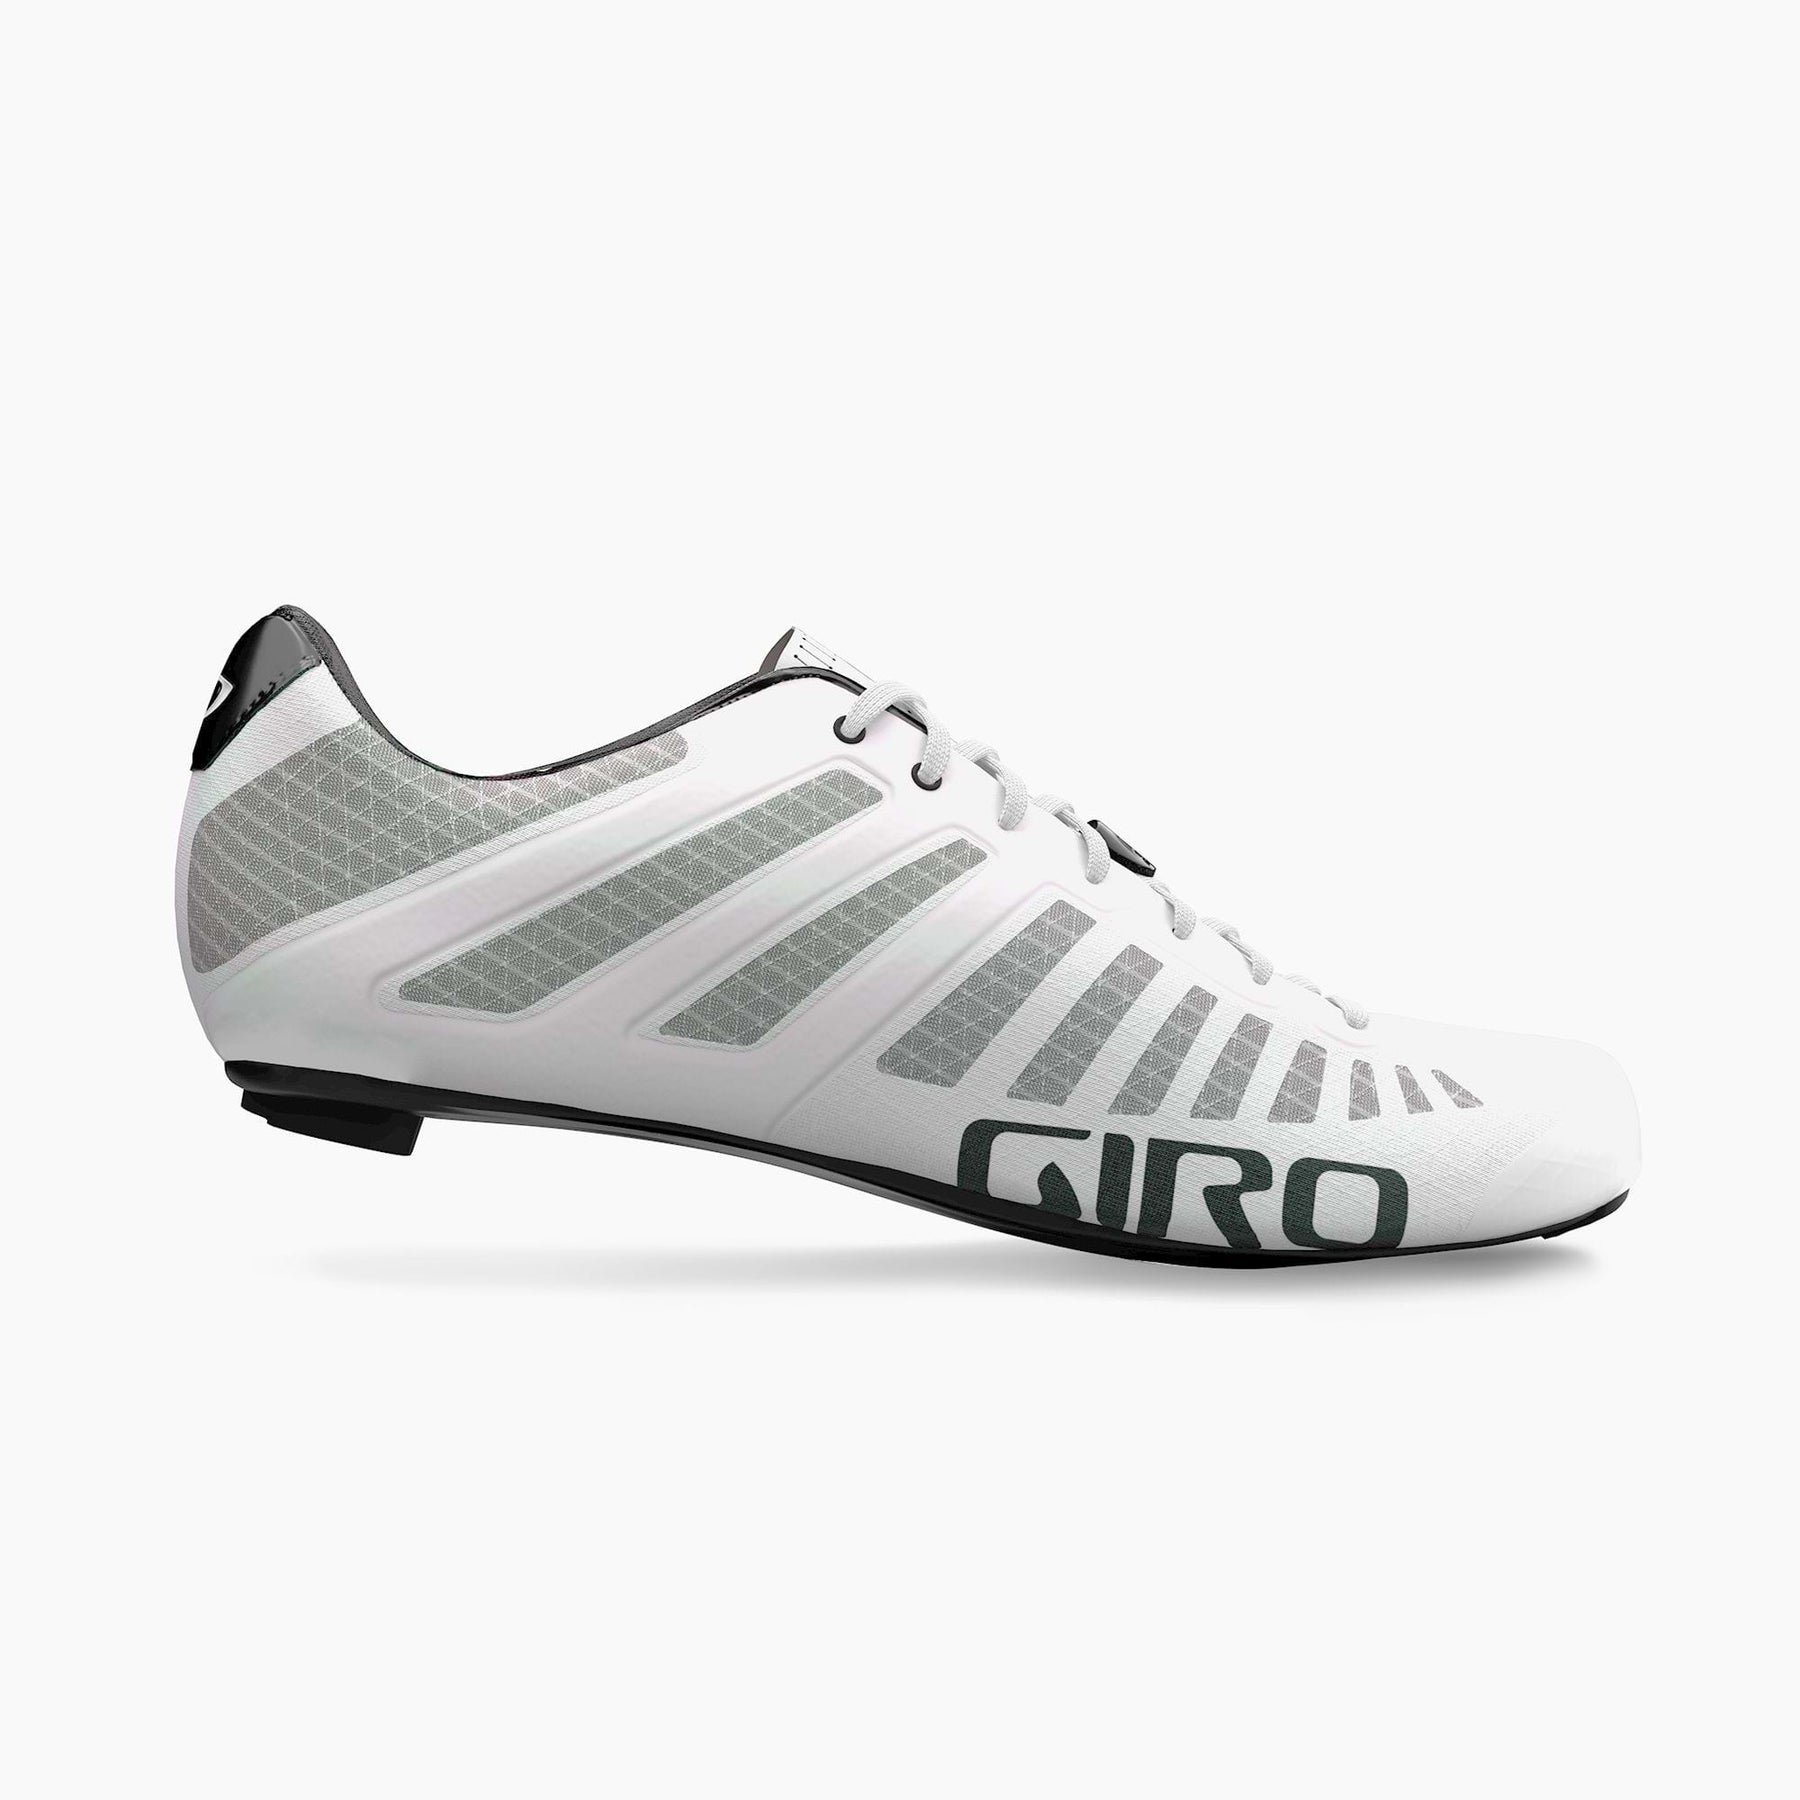 Giro Empire SLX Road Cycling Shoe